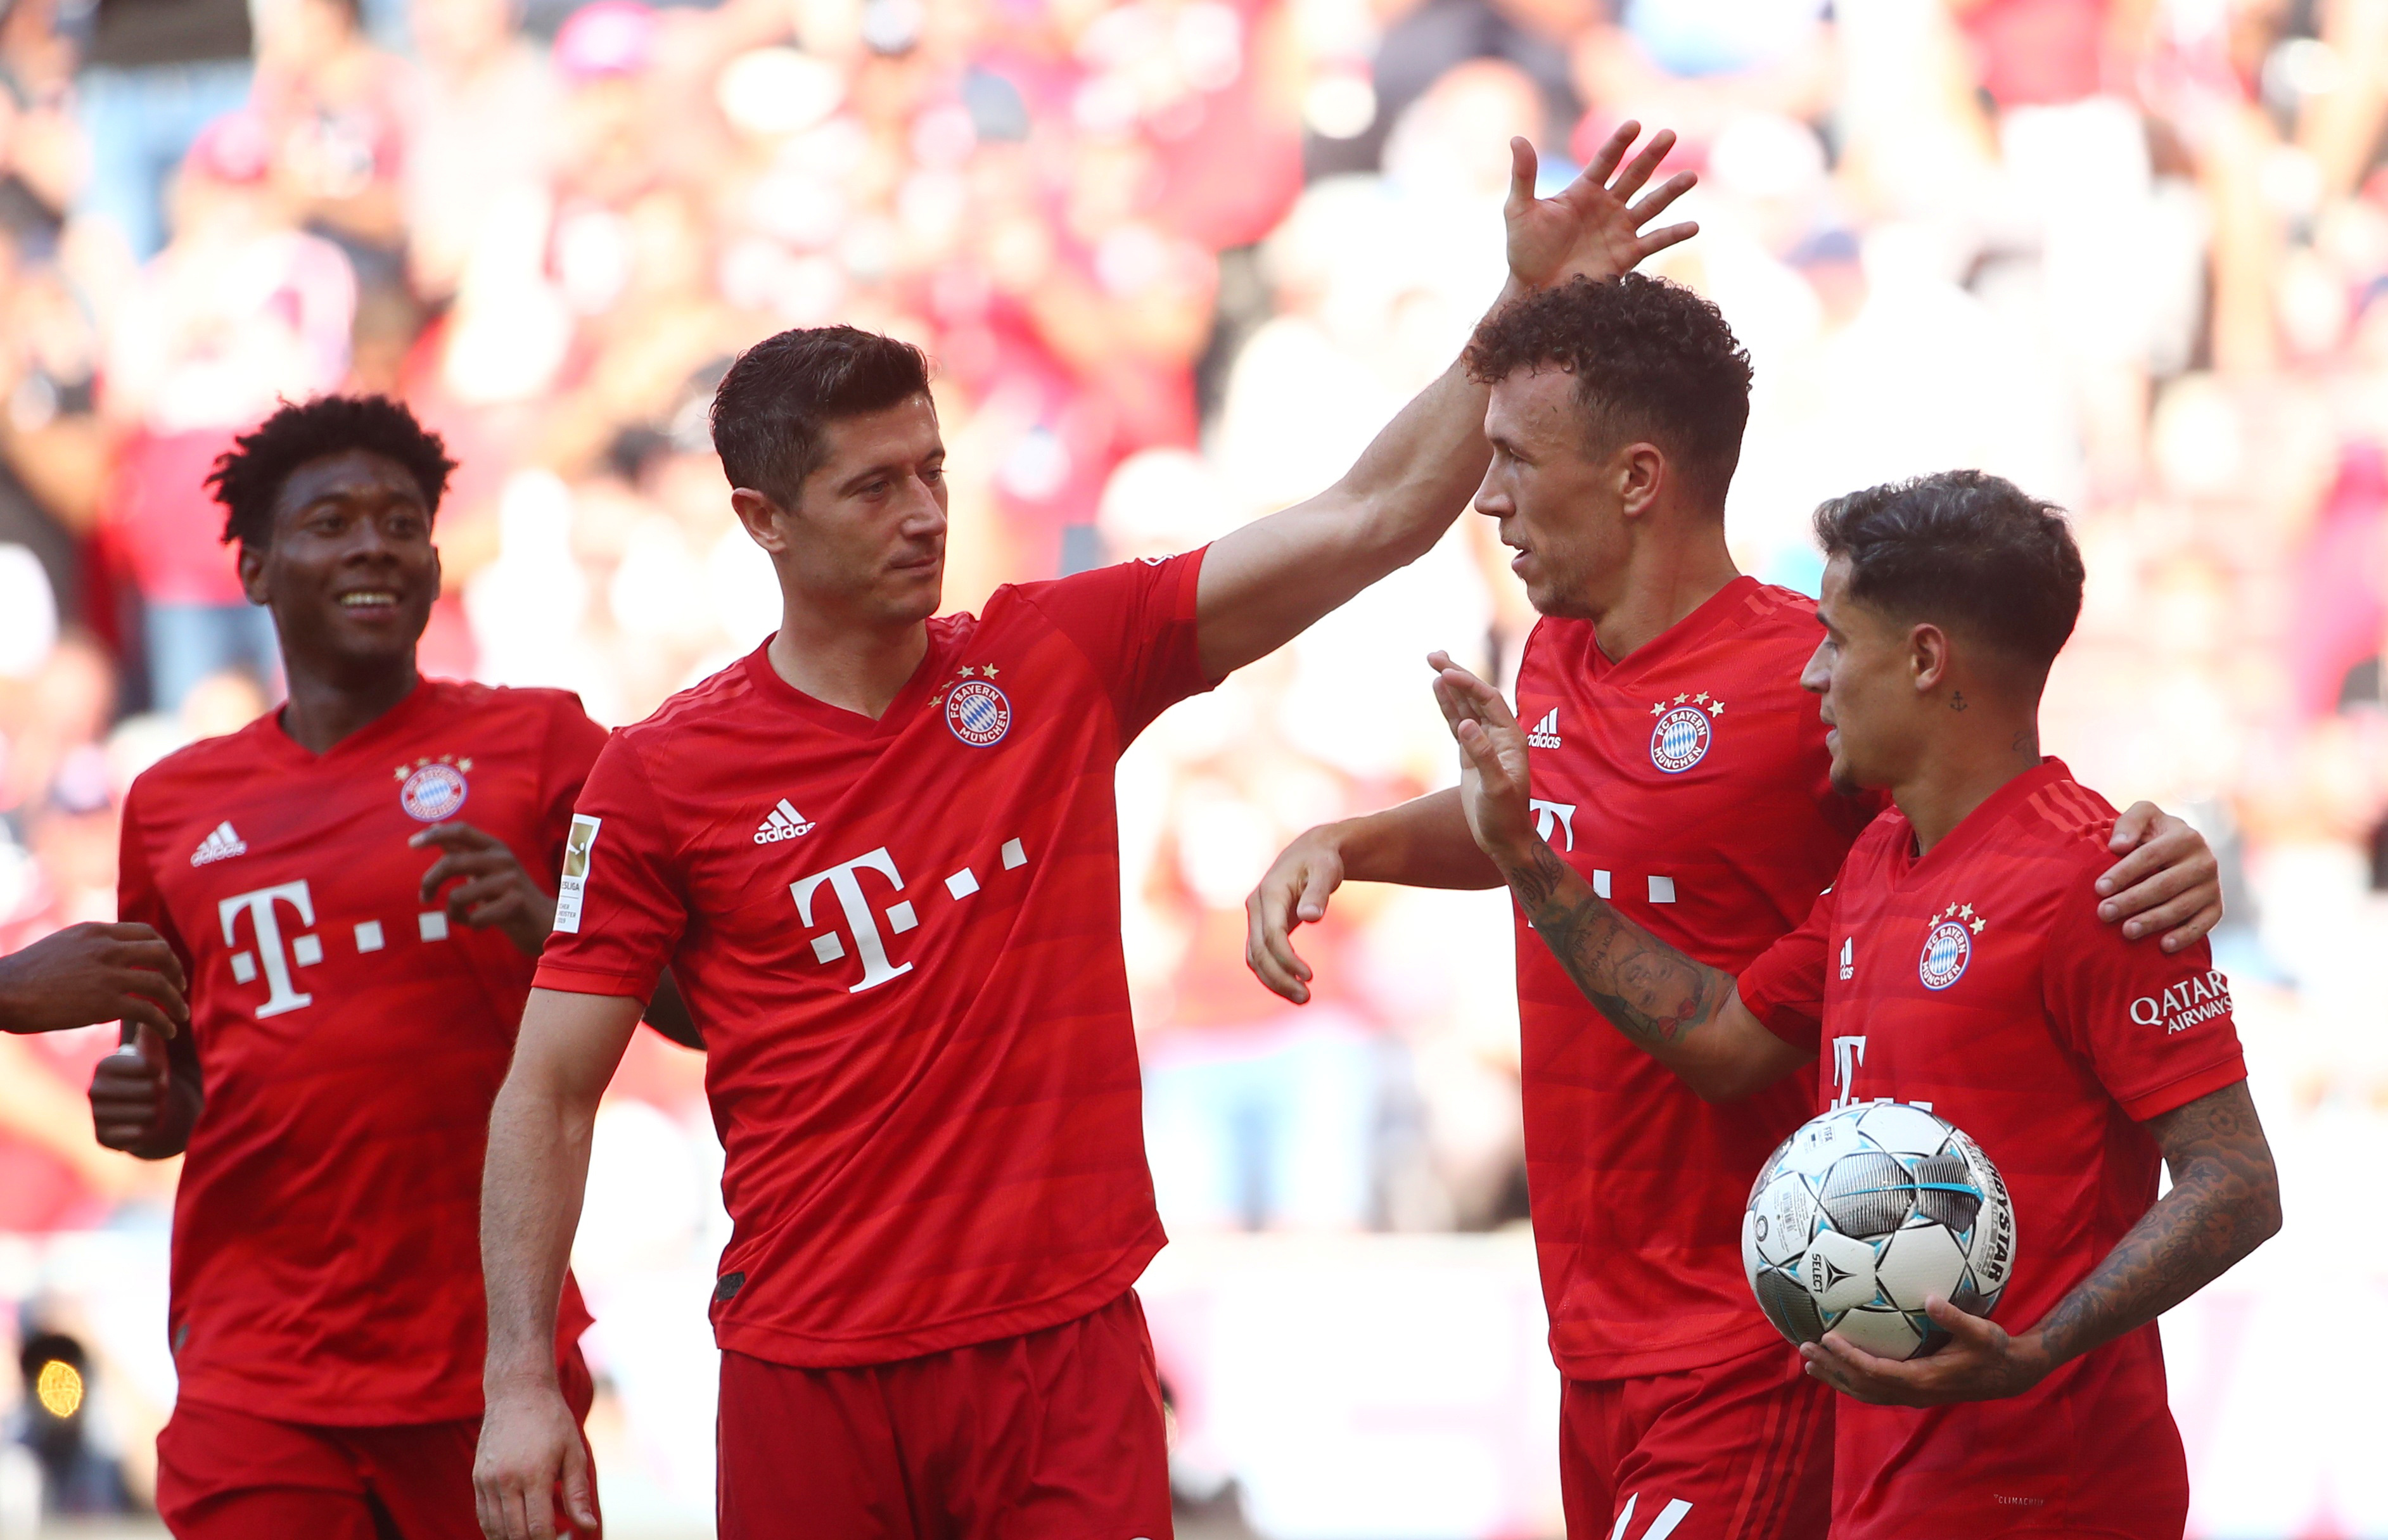 Bayern vykročil k titulu. O vítězství ve šlágru na hřišti Dortmundu rozhodl Kimmichův chytrý lob